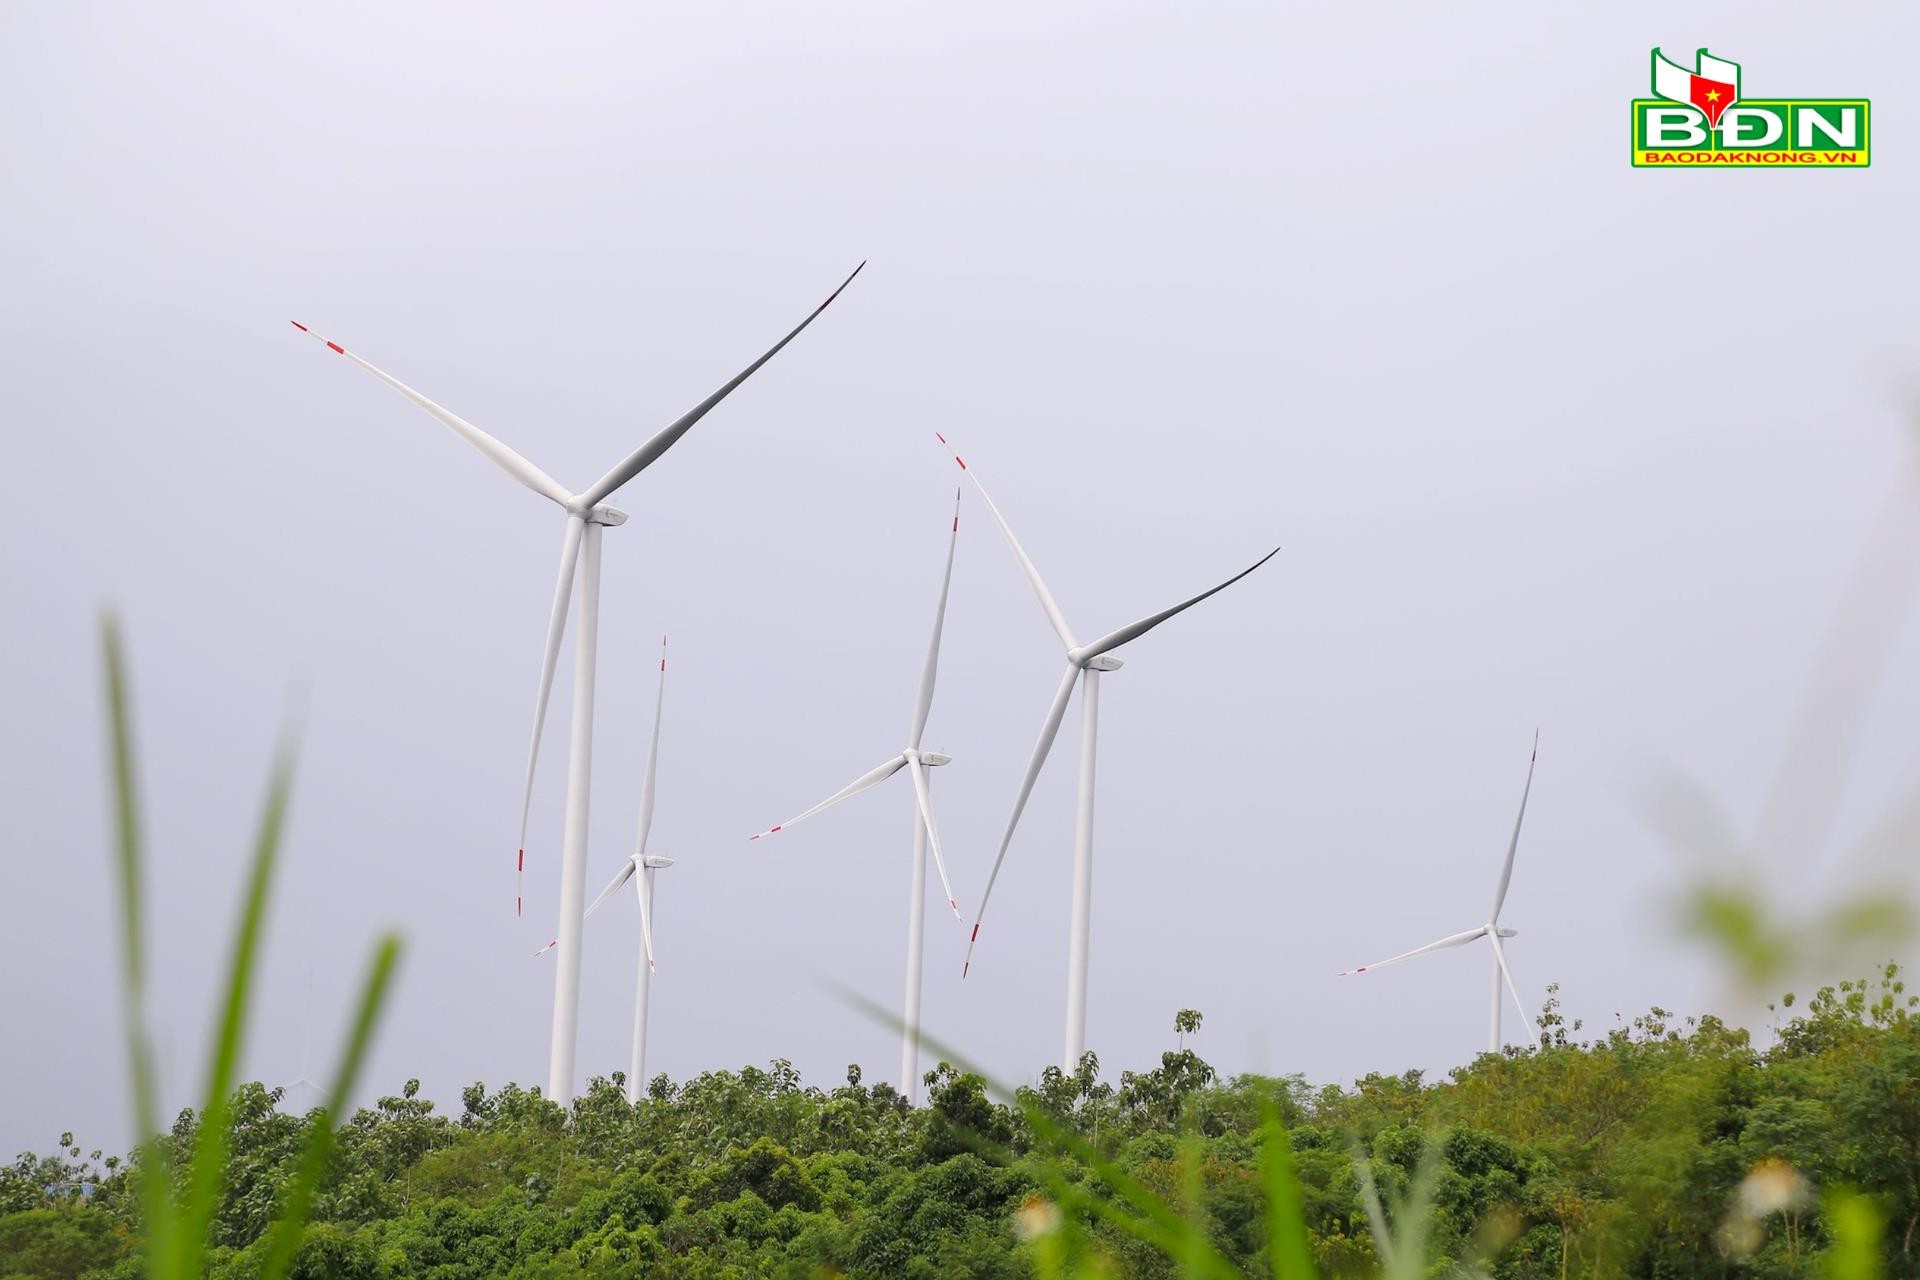 Điện gió đang cung cấp sản lượng chiếm 6,98% tổng sản lượng điện cung cấp ở Đắk Nông